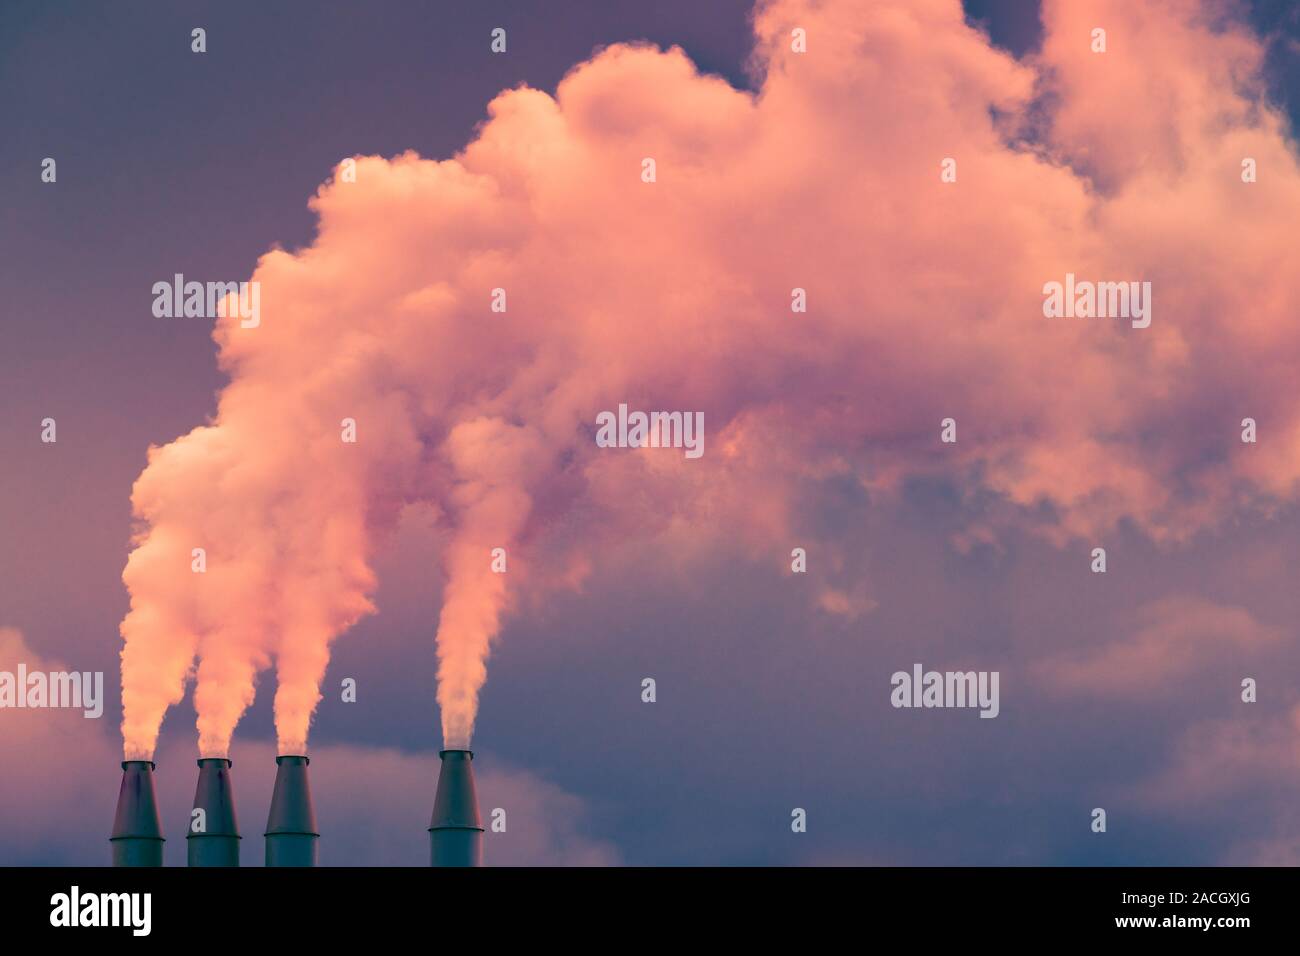 Rauch und Dampf in die Luft vom Kraftwerk Stacks; dunkle Wolken Hintergrund; Konzept für Umweltverschmutzung und Klimawandel Stockfoto